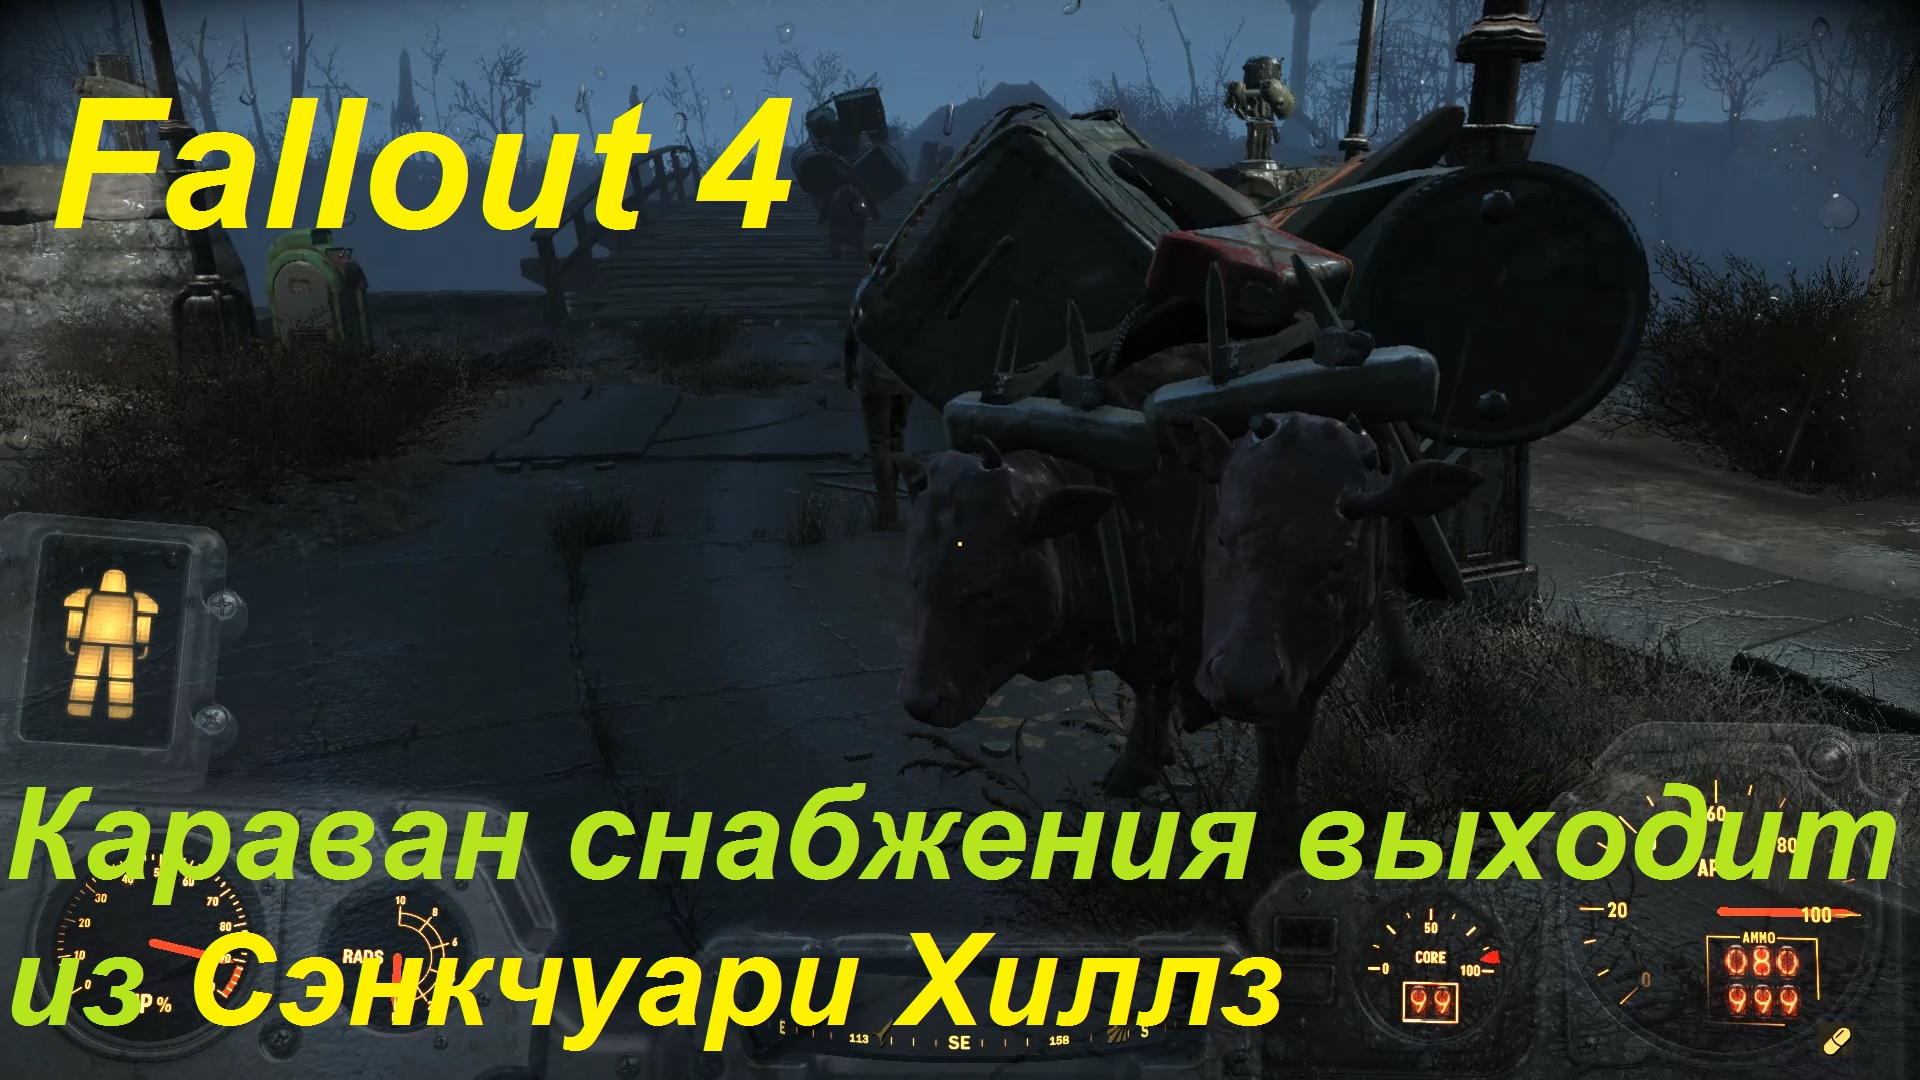 Fallout 4 где собака в сэнкчуари фото 67